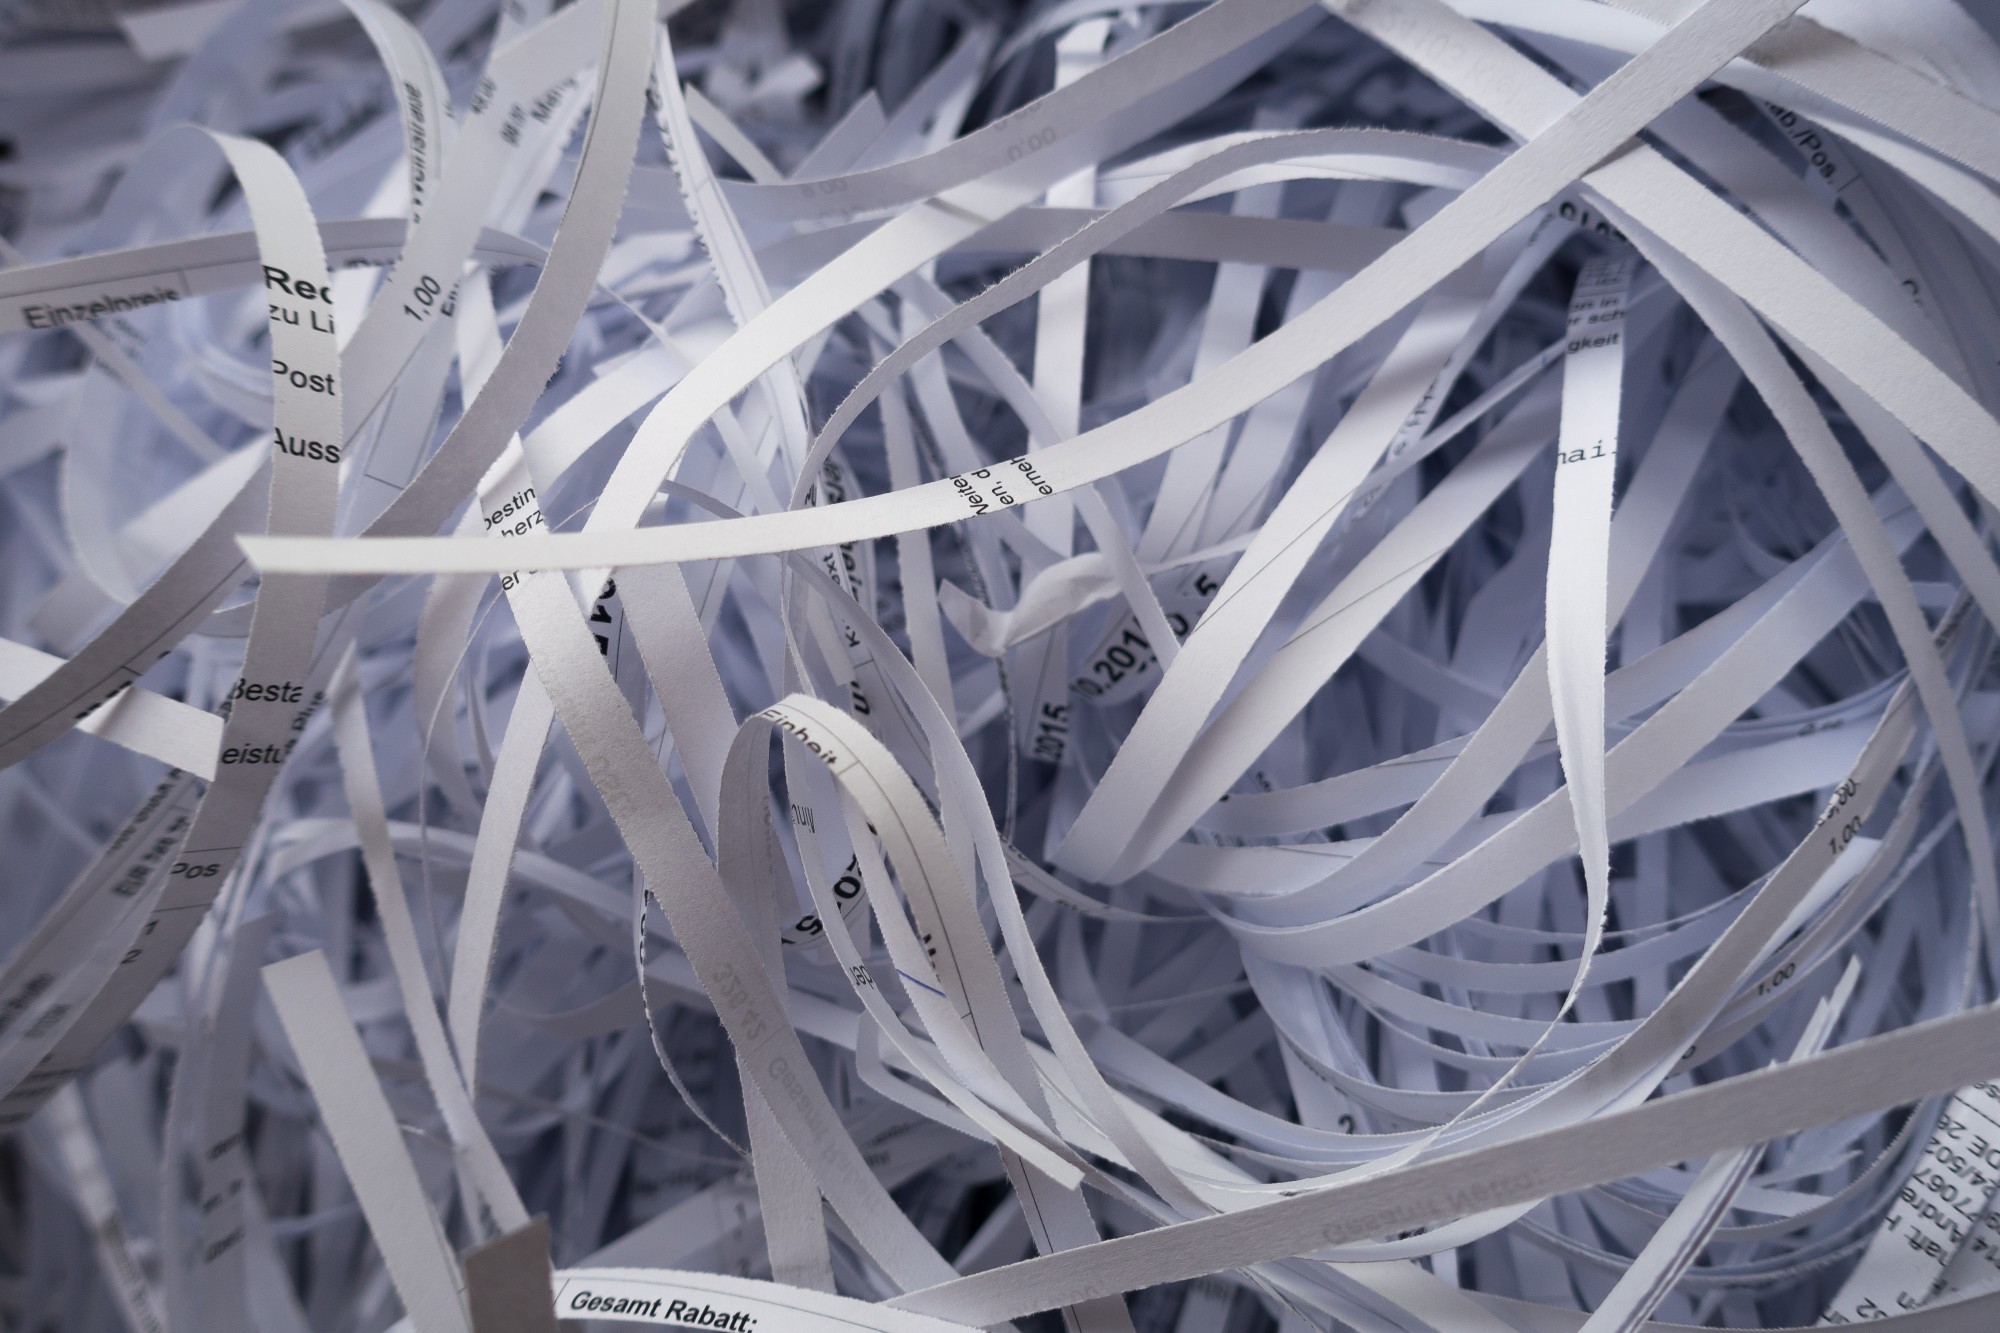 shredded paper ribbons